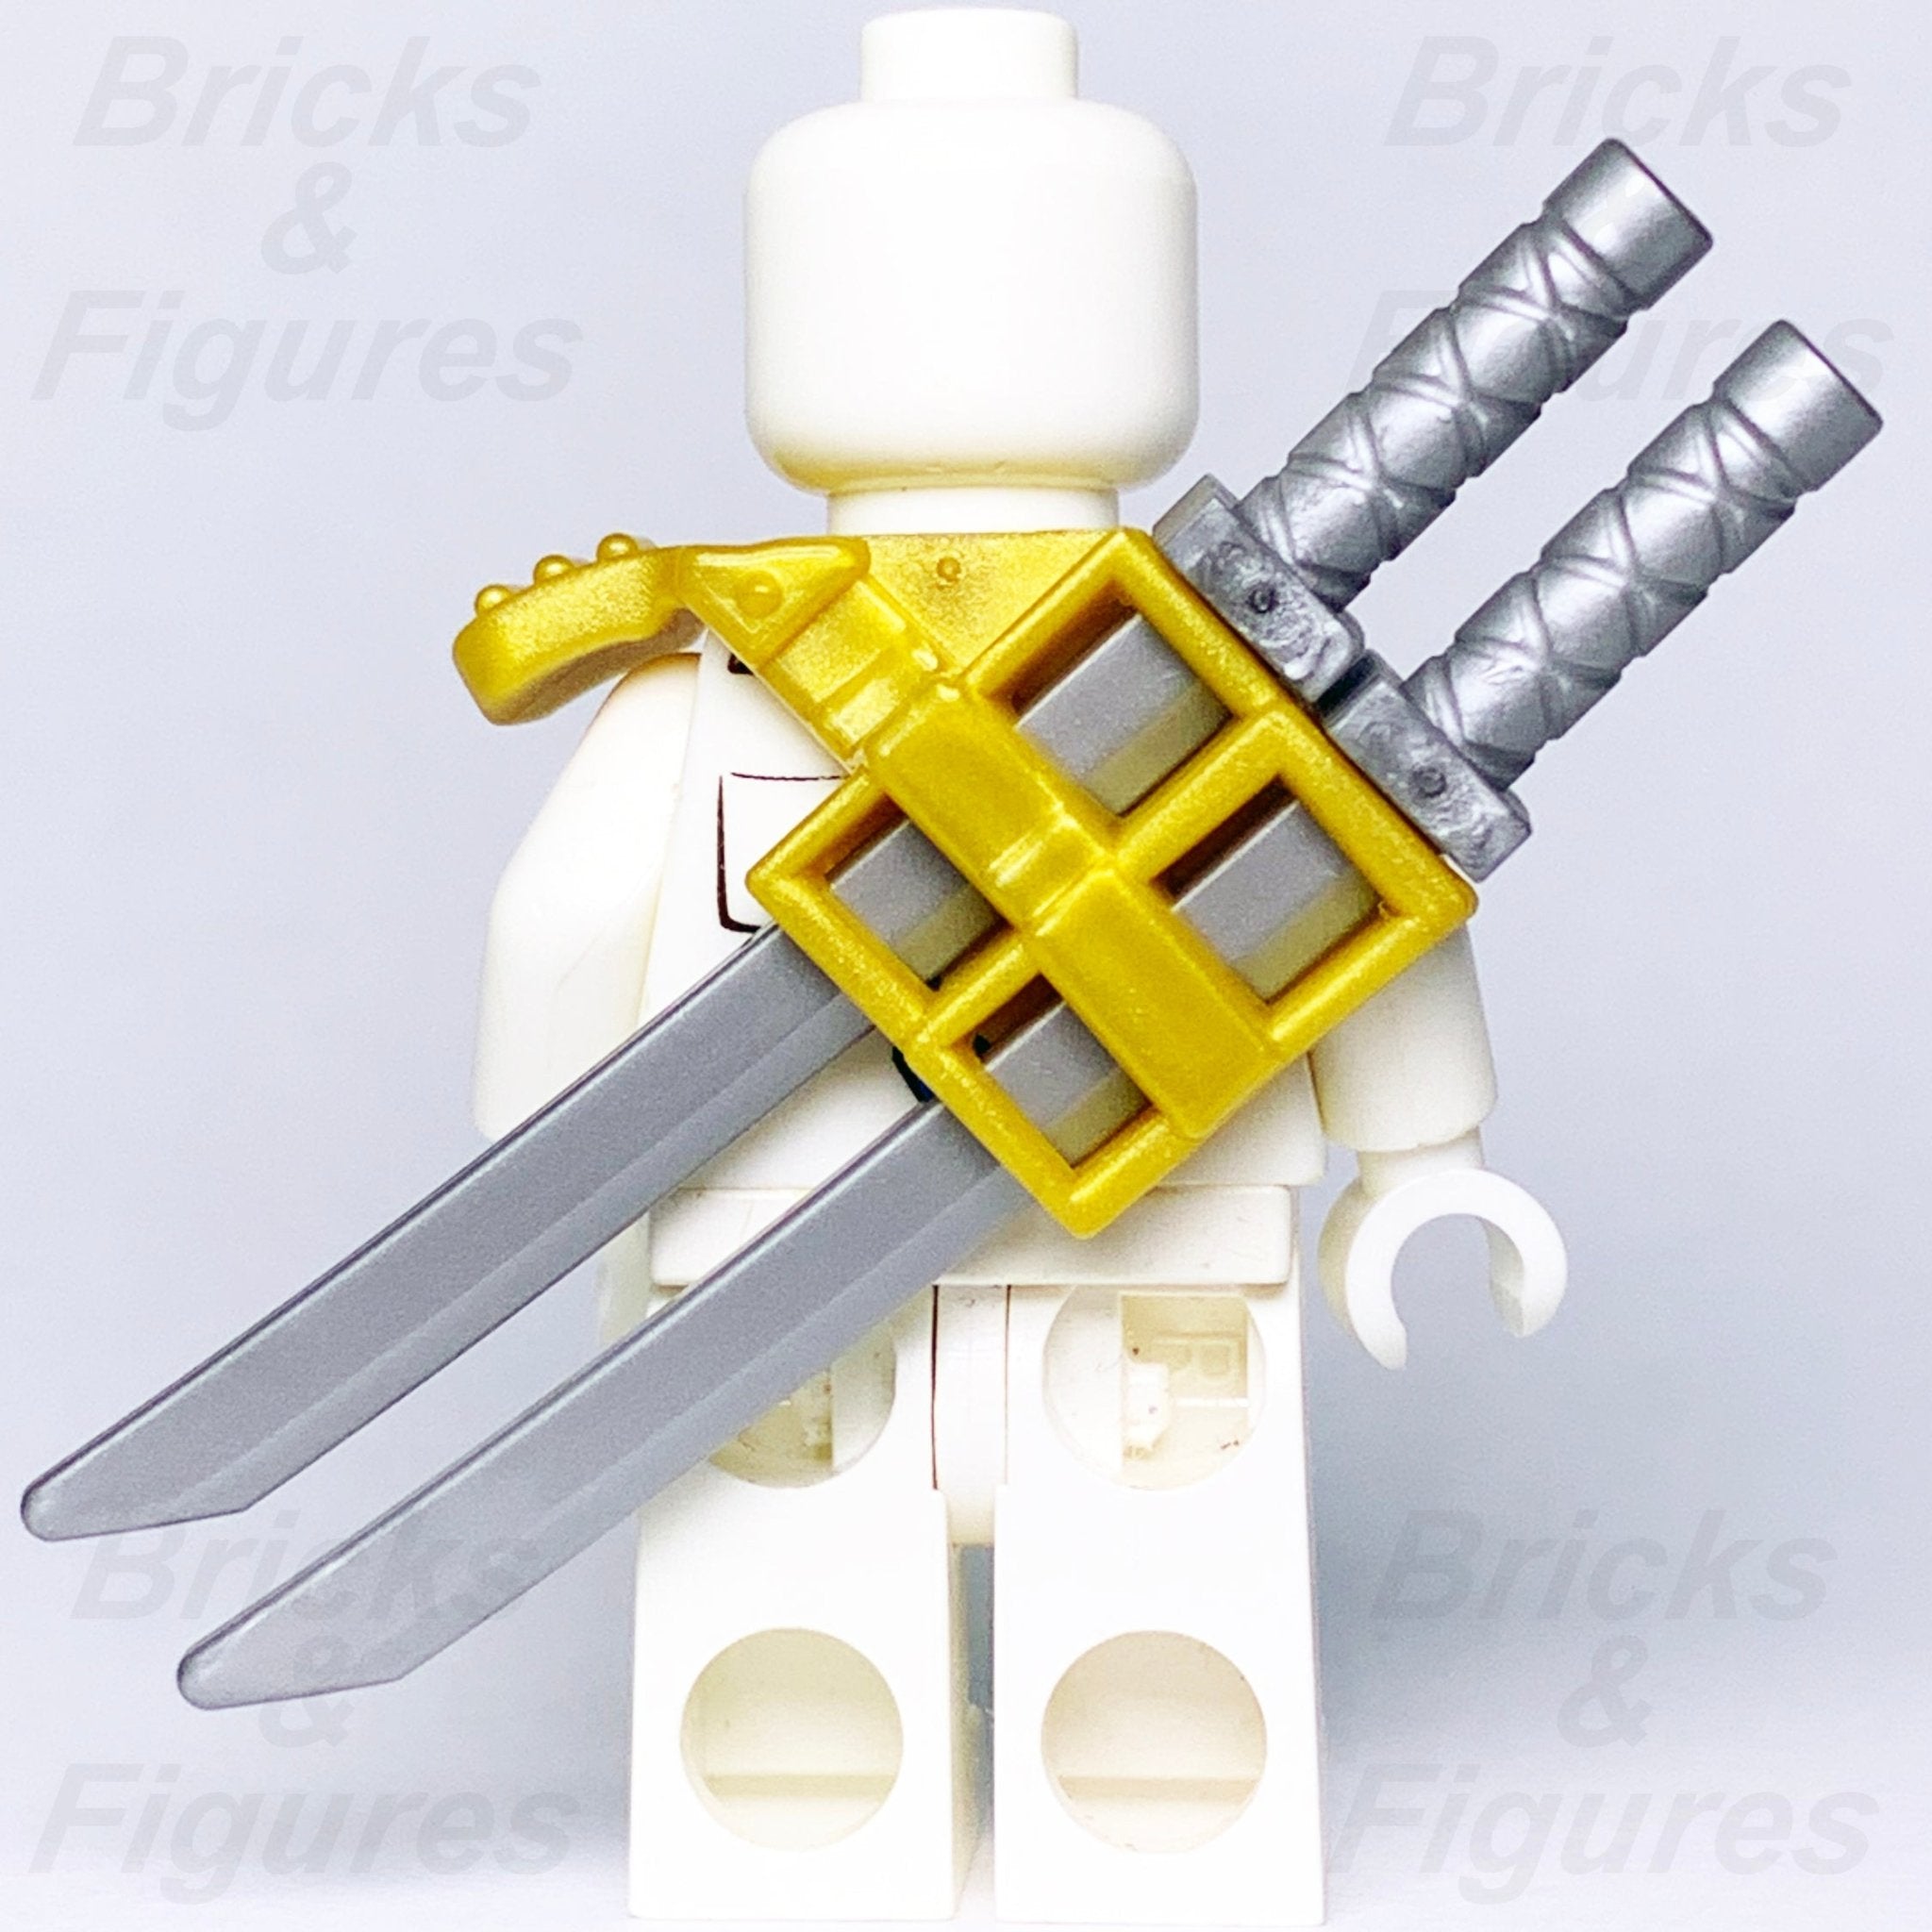 LEGO Ninjago Katana Pack of 10 for Ninjas and Samurais